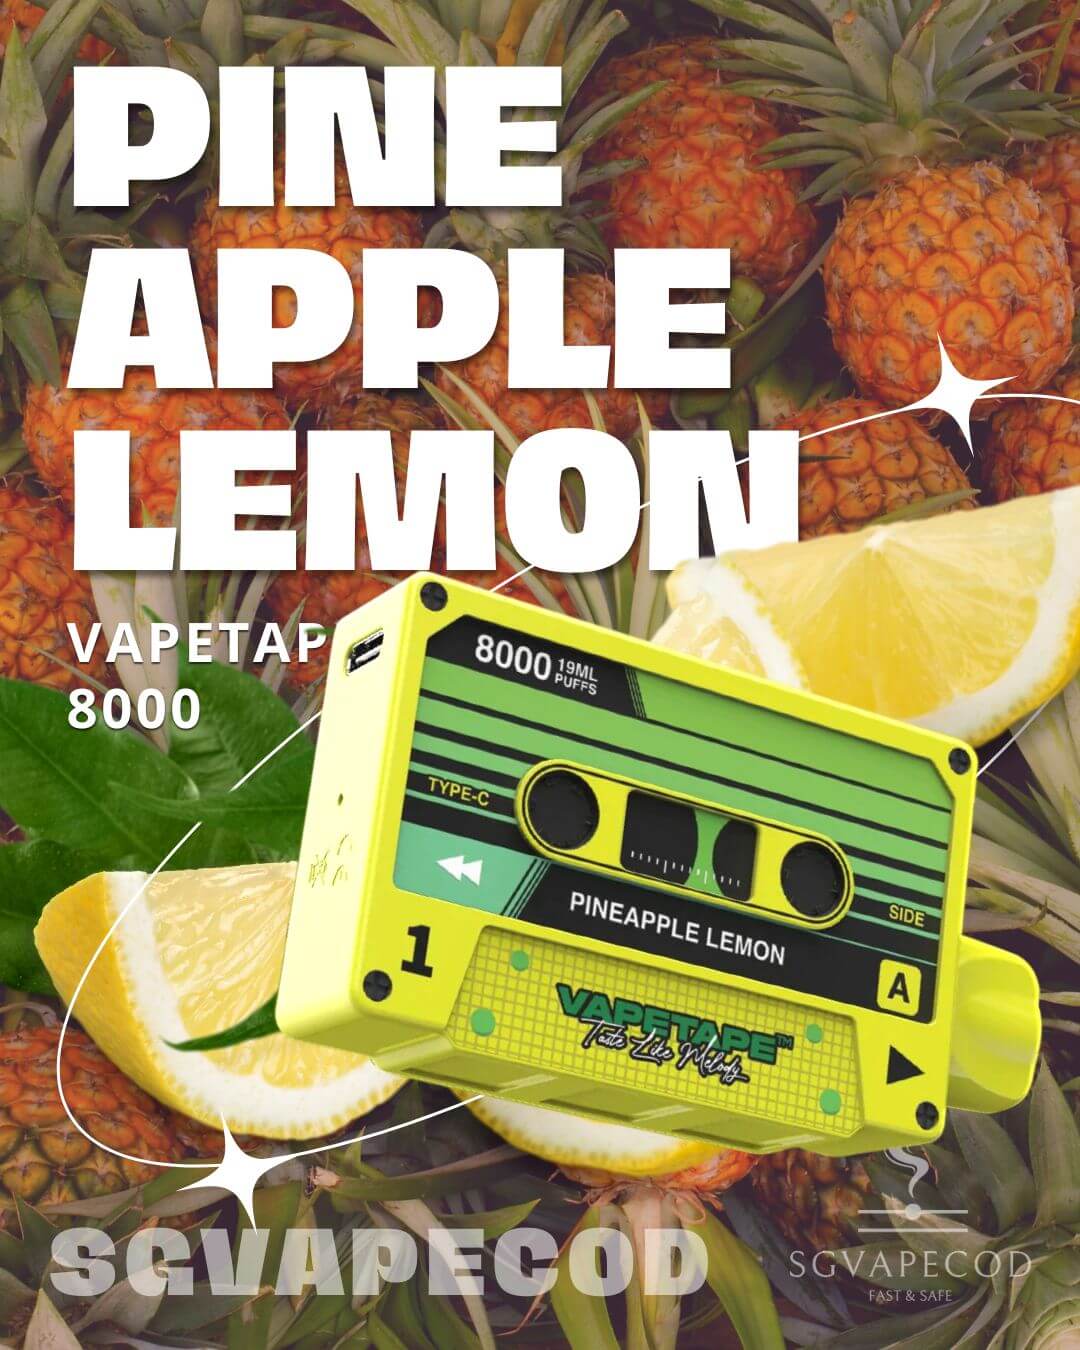 Vapetape-8000-Pineapple-Lemon-(SG VAPE COD)